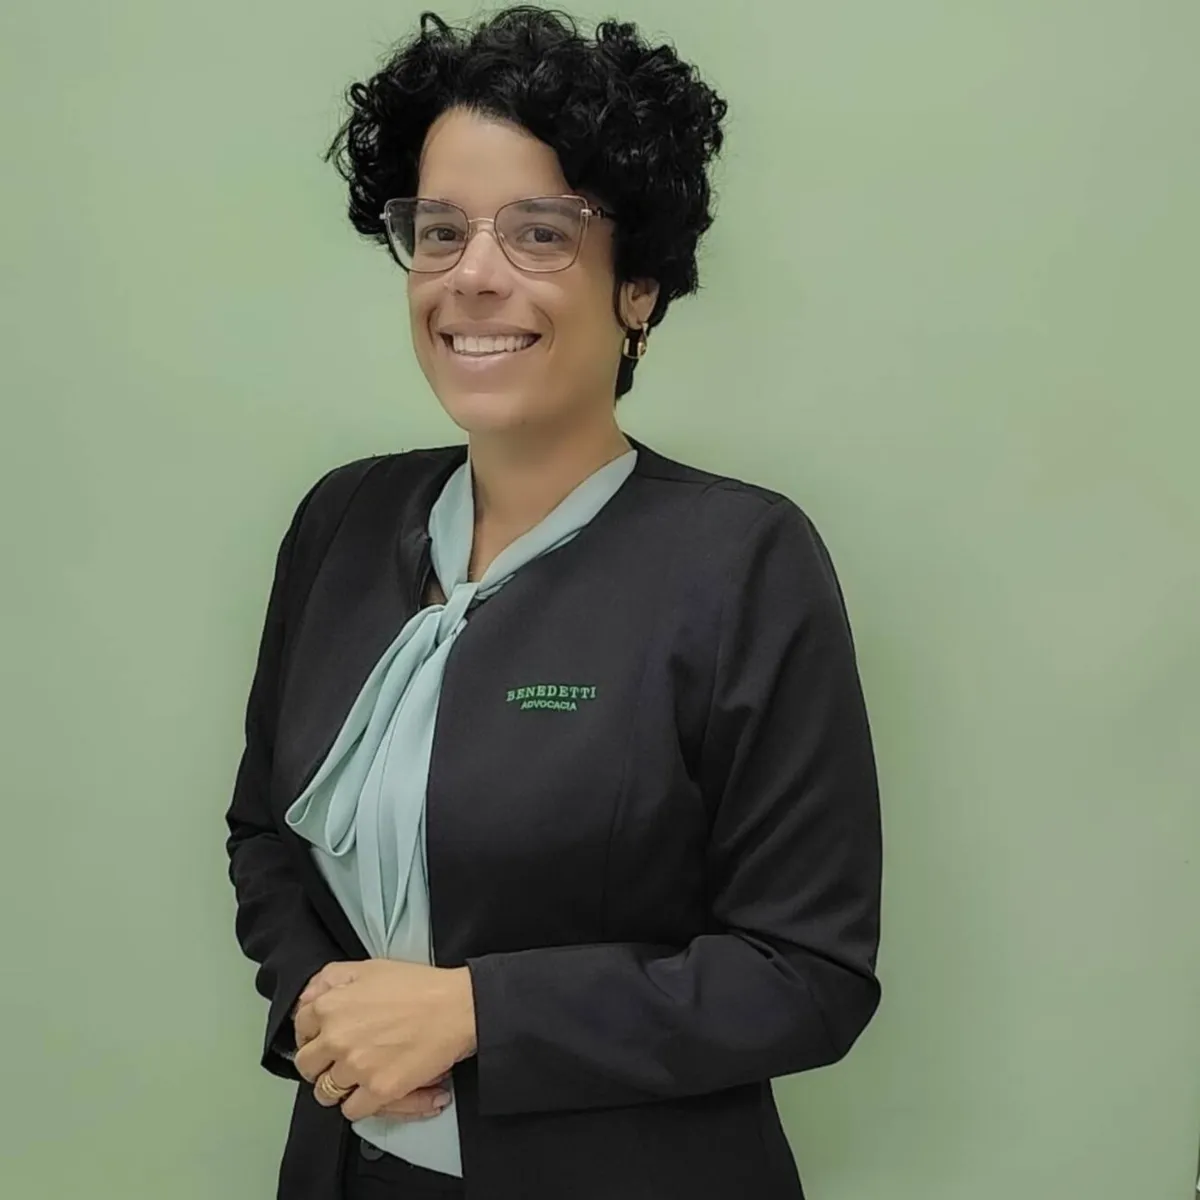 Tatiana Romanha, líder de Recursos Humanos: "Elegância, conforto e sentimento de pertencer à empresa"